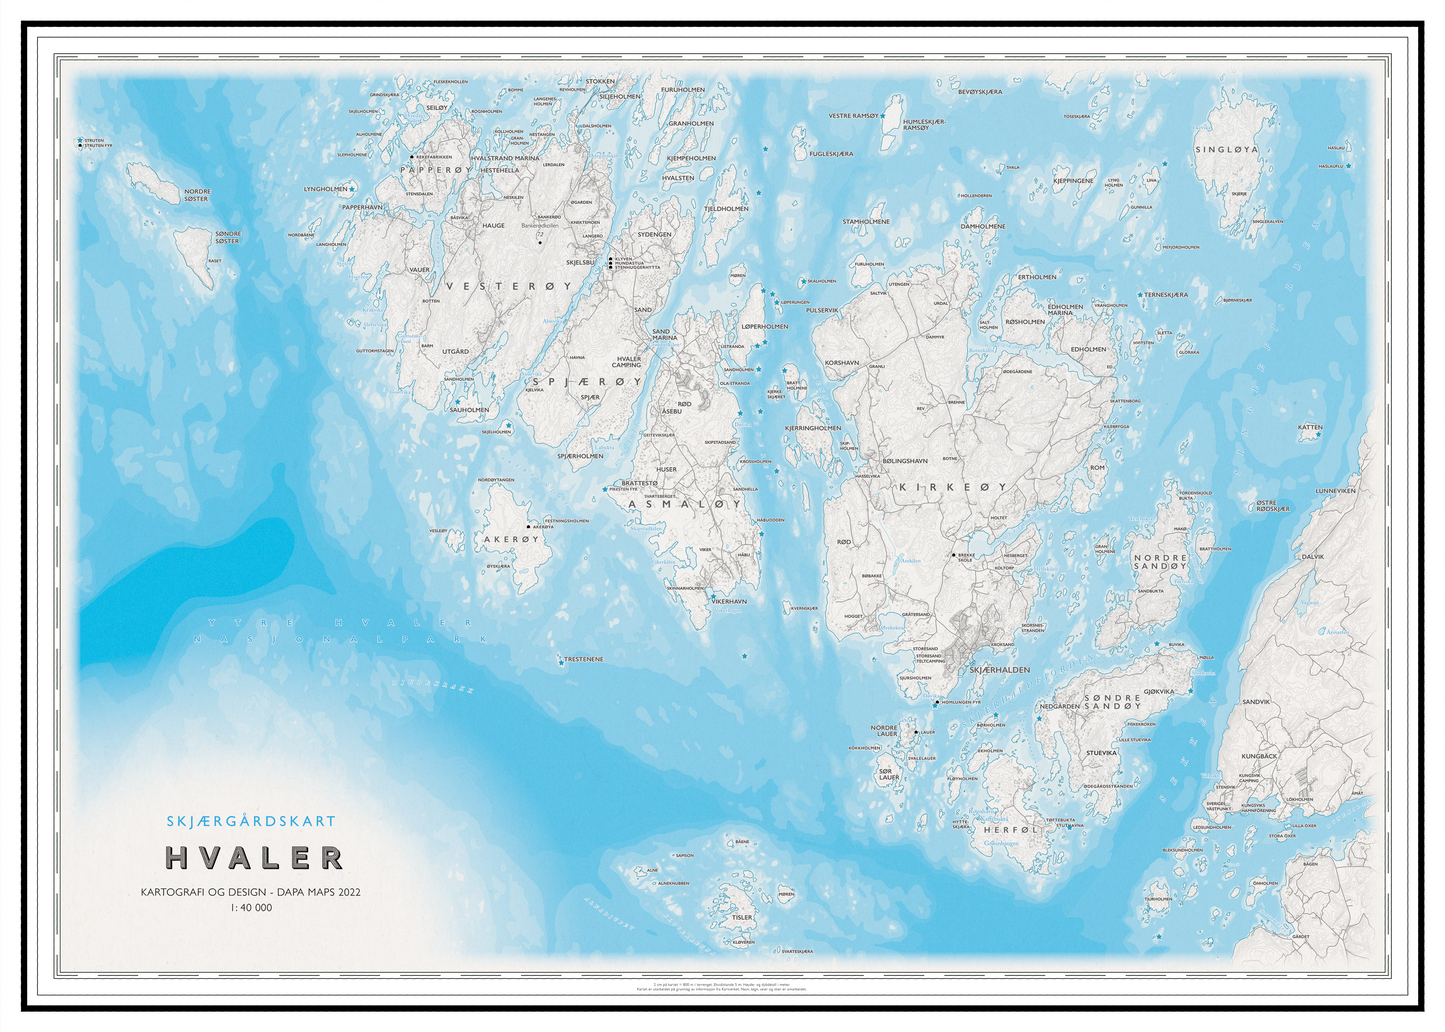 Skjærgårdskart Hvaler